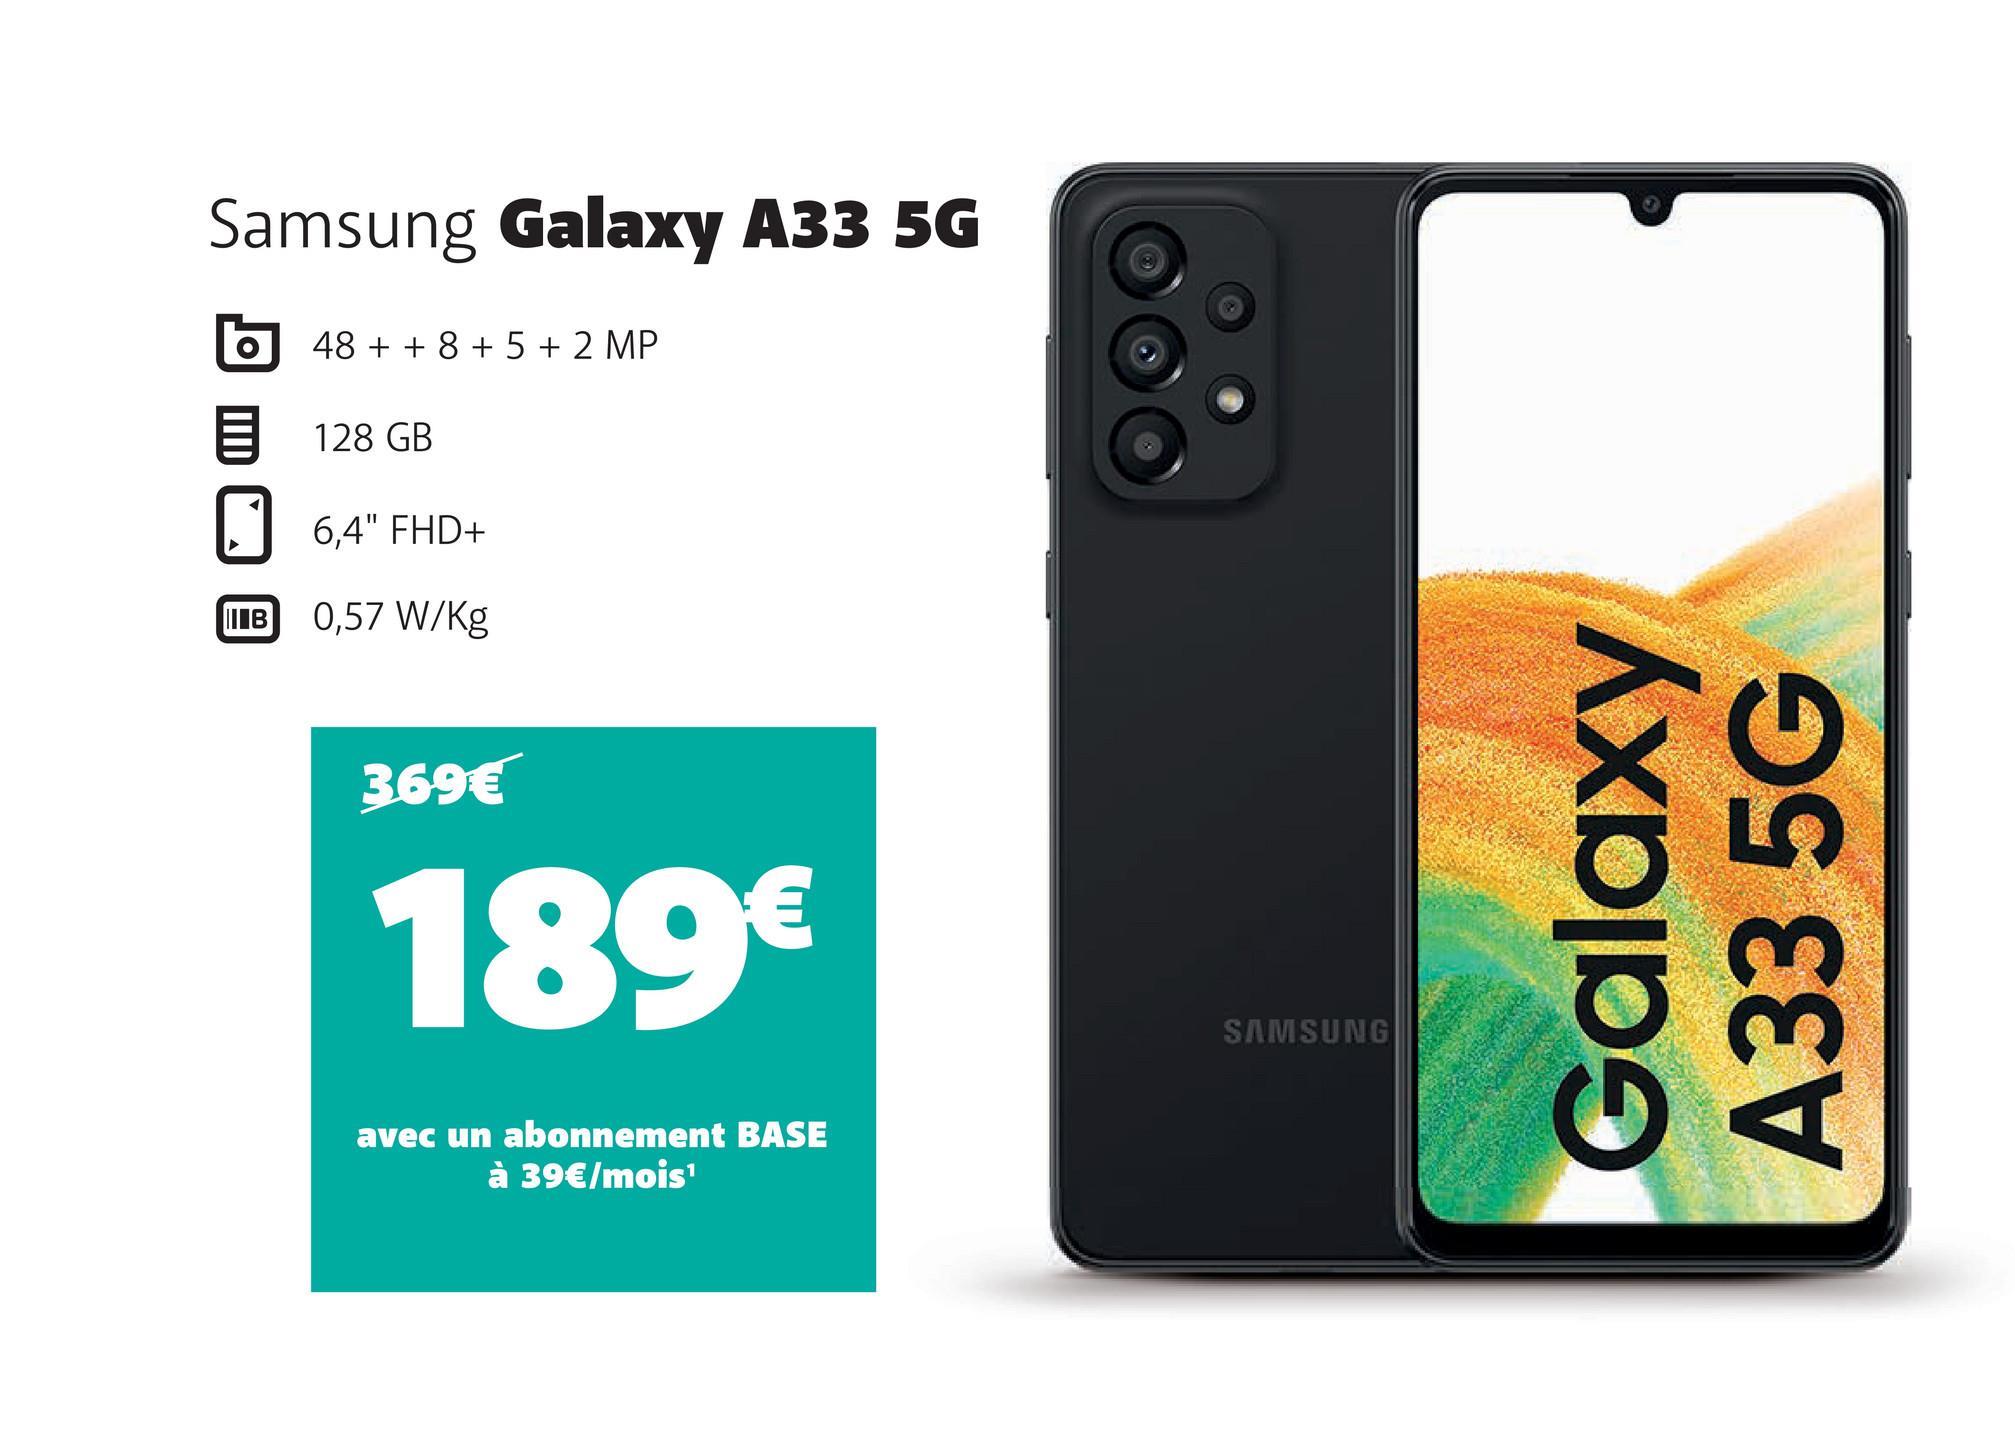 Samsung Galaxy A33 5G
O
IB
48 + + 8 + 5 + 2 MP
128 GB
6,4" FHD+
0,57 W/kg
369€
189€
avec un abonnement BASE
à 39€/mois¹
SAMSUNG
Galaxy
A33 5G